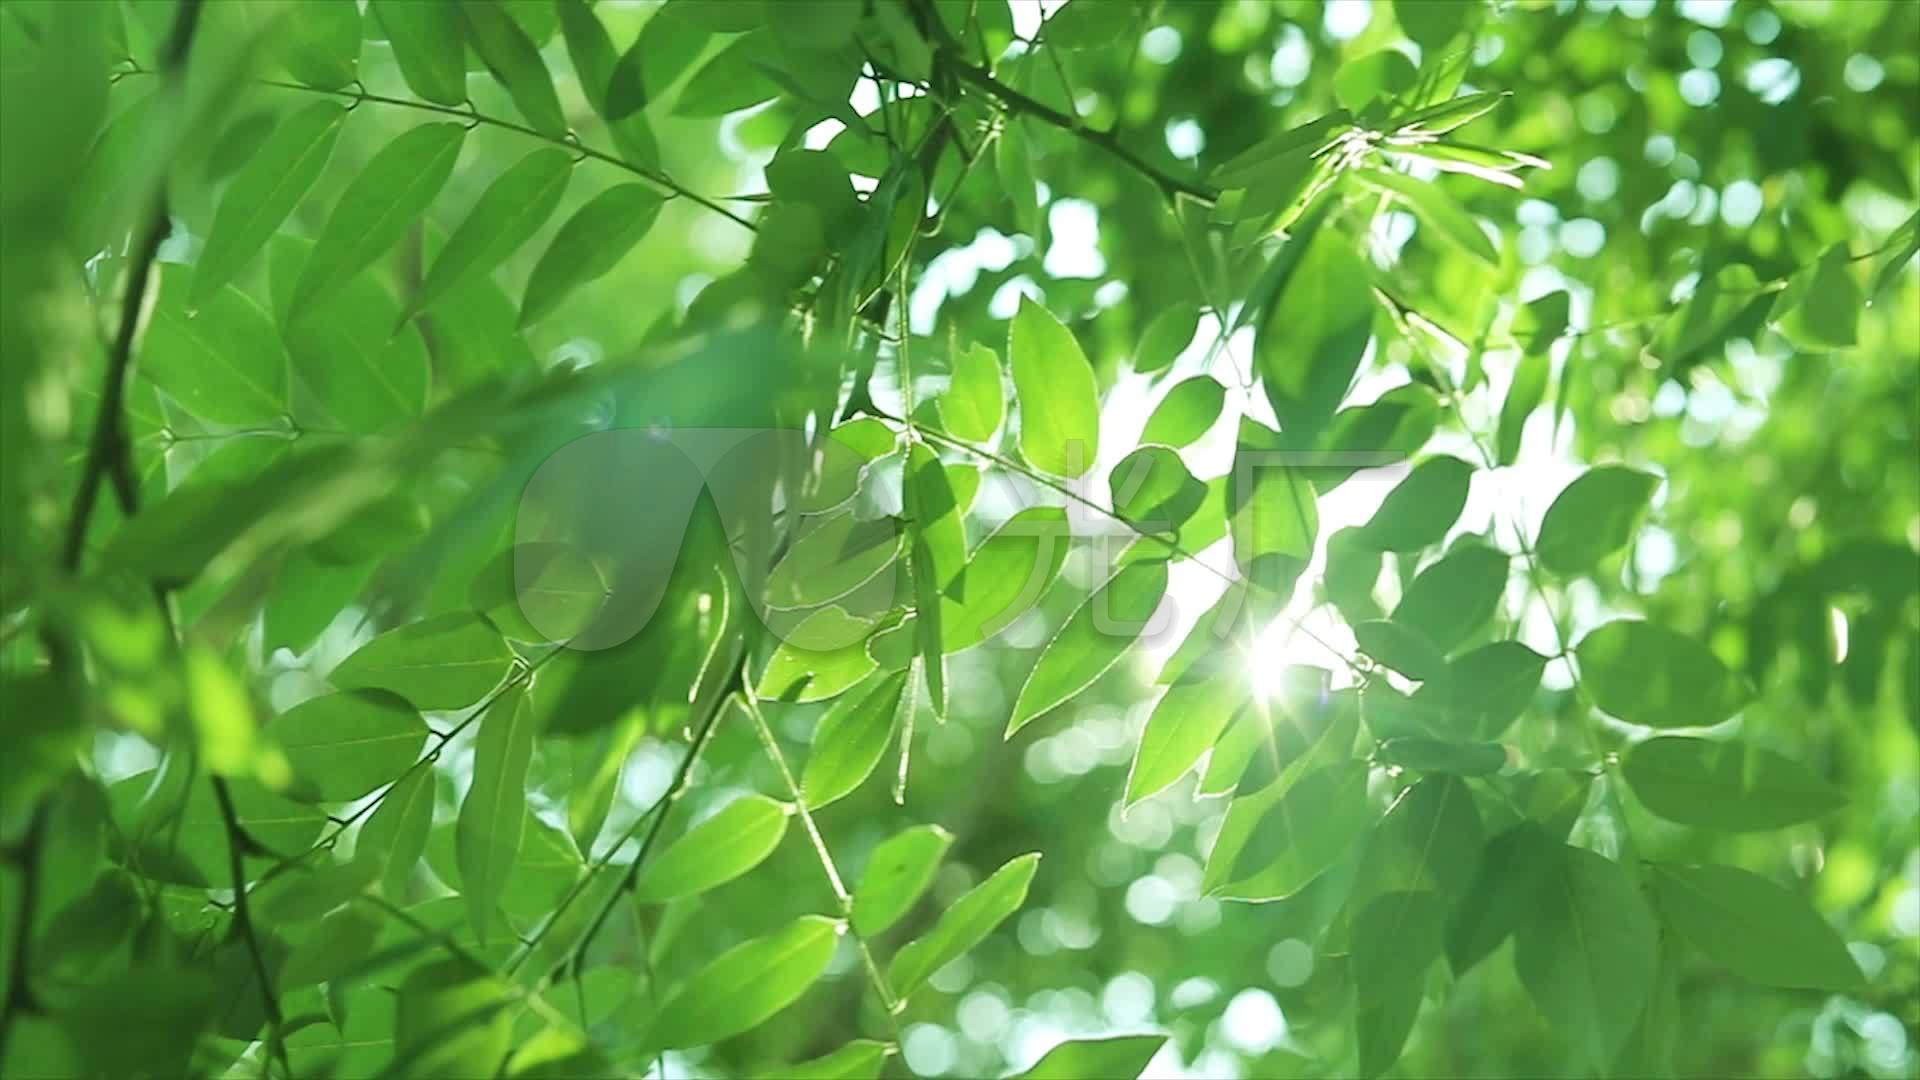 夏日气息!清新绿叶高清壁纸_植物_太平洋科技